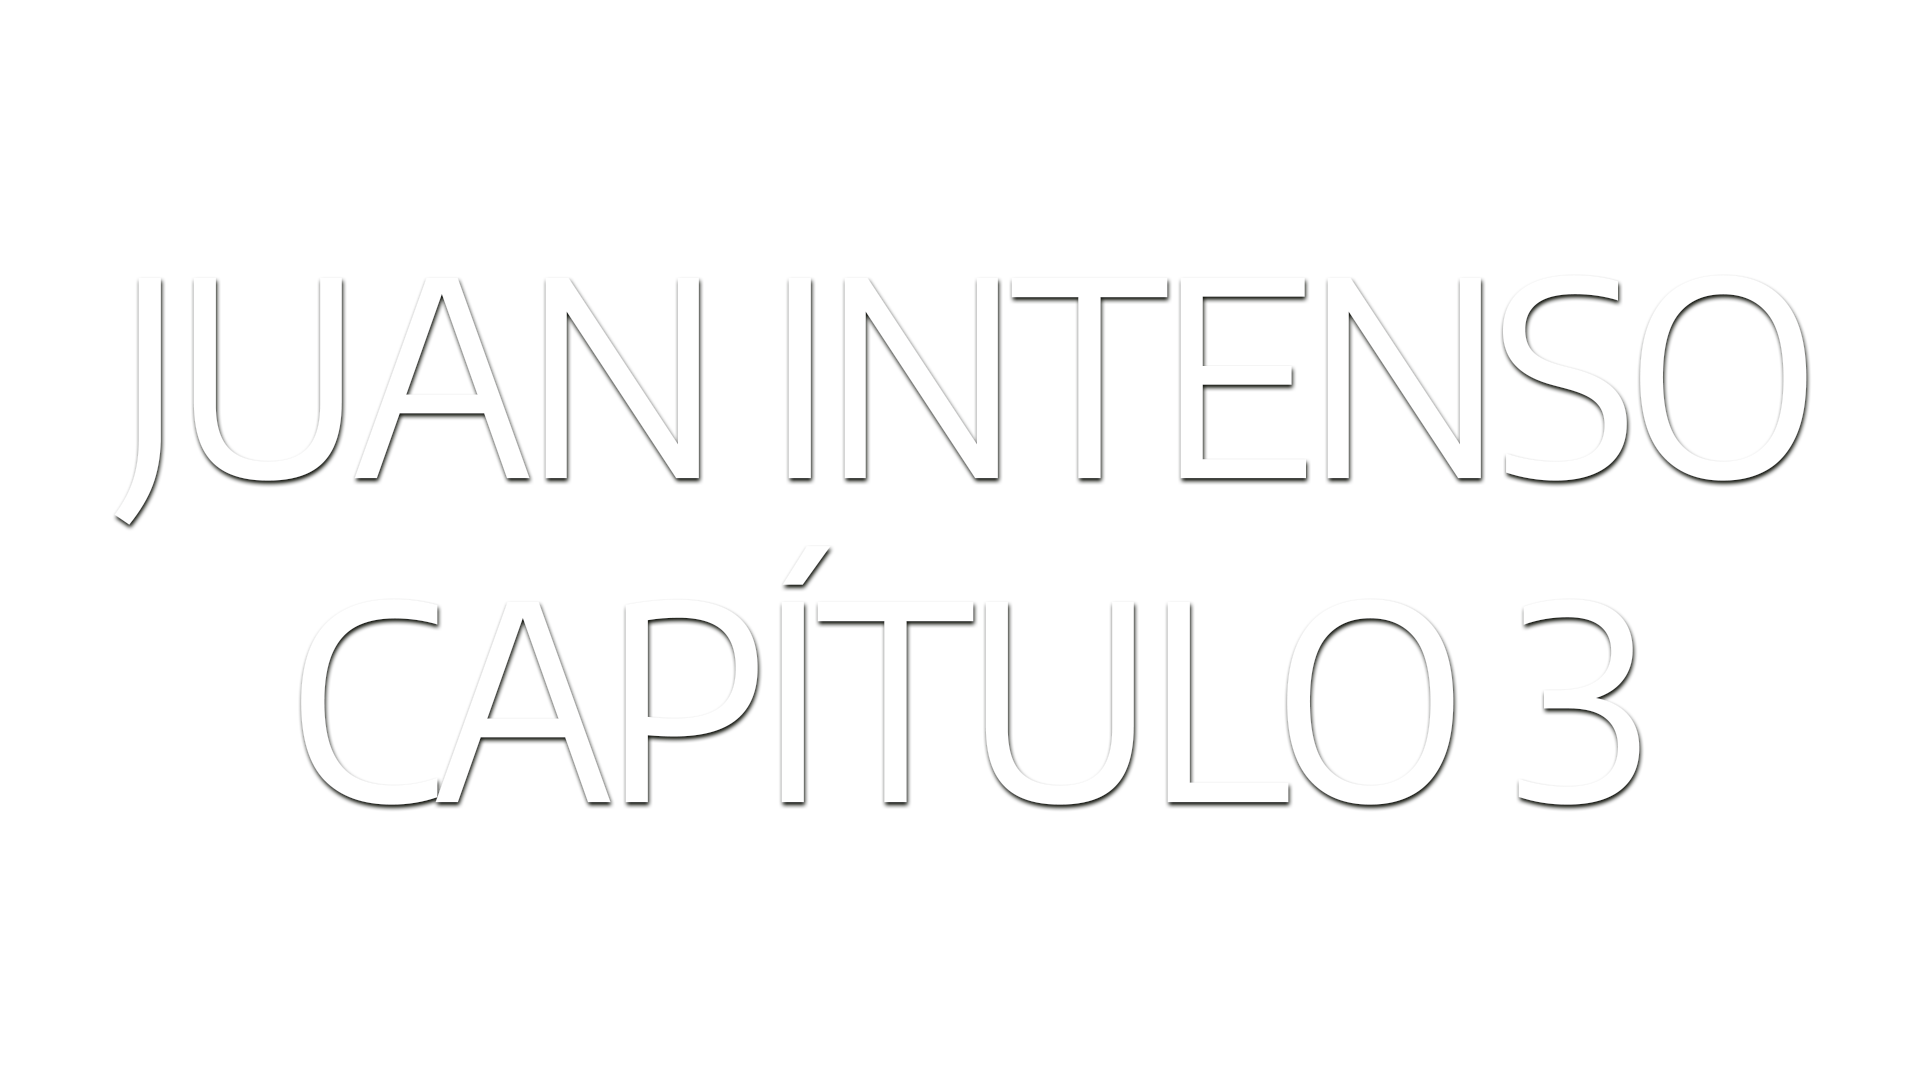 Juan Intenso – Ep 3